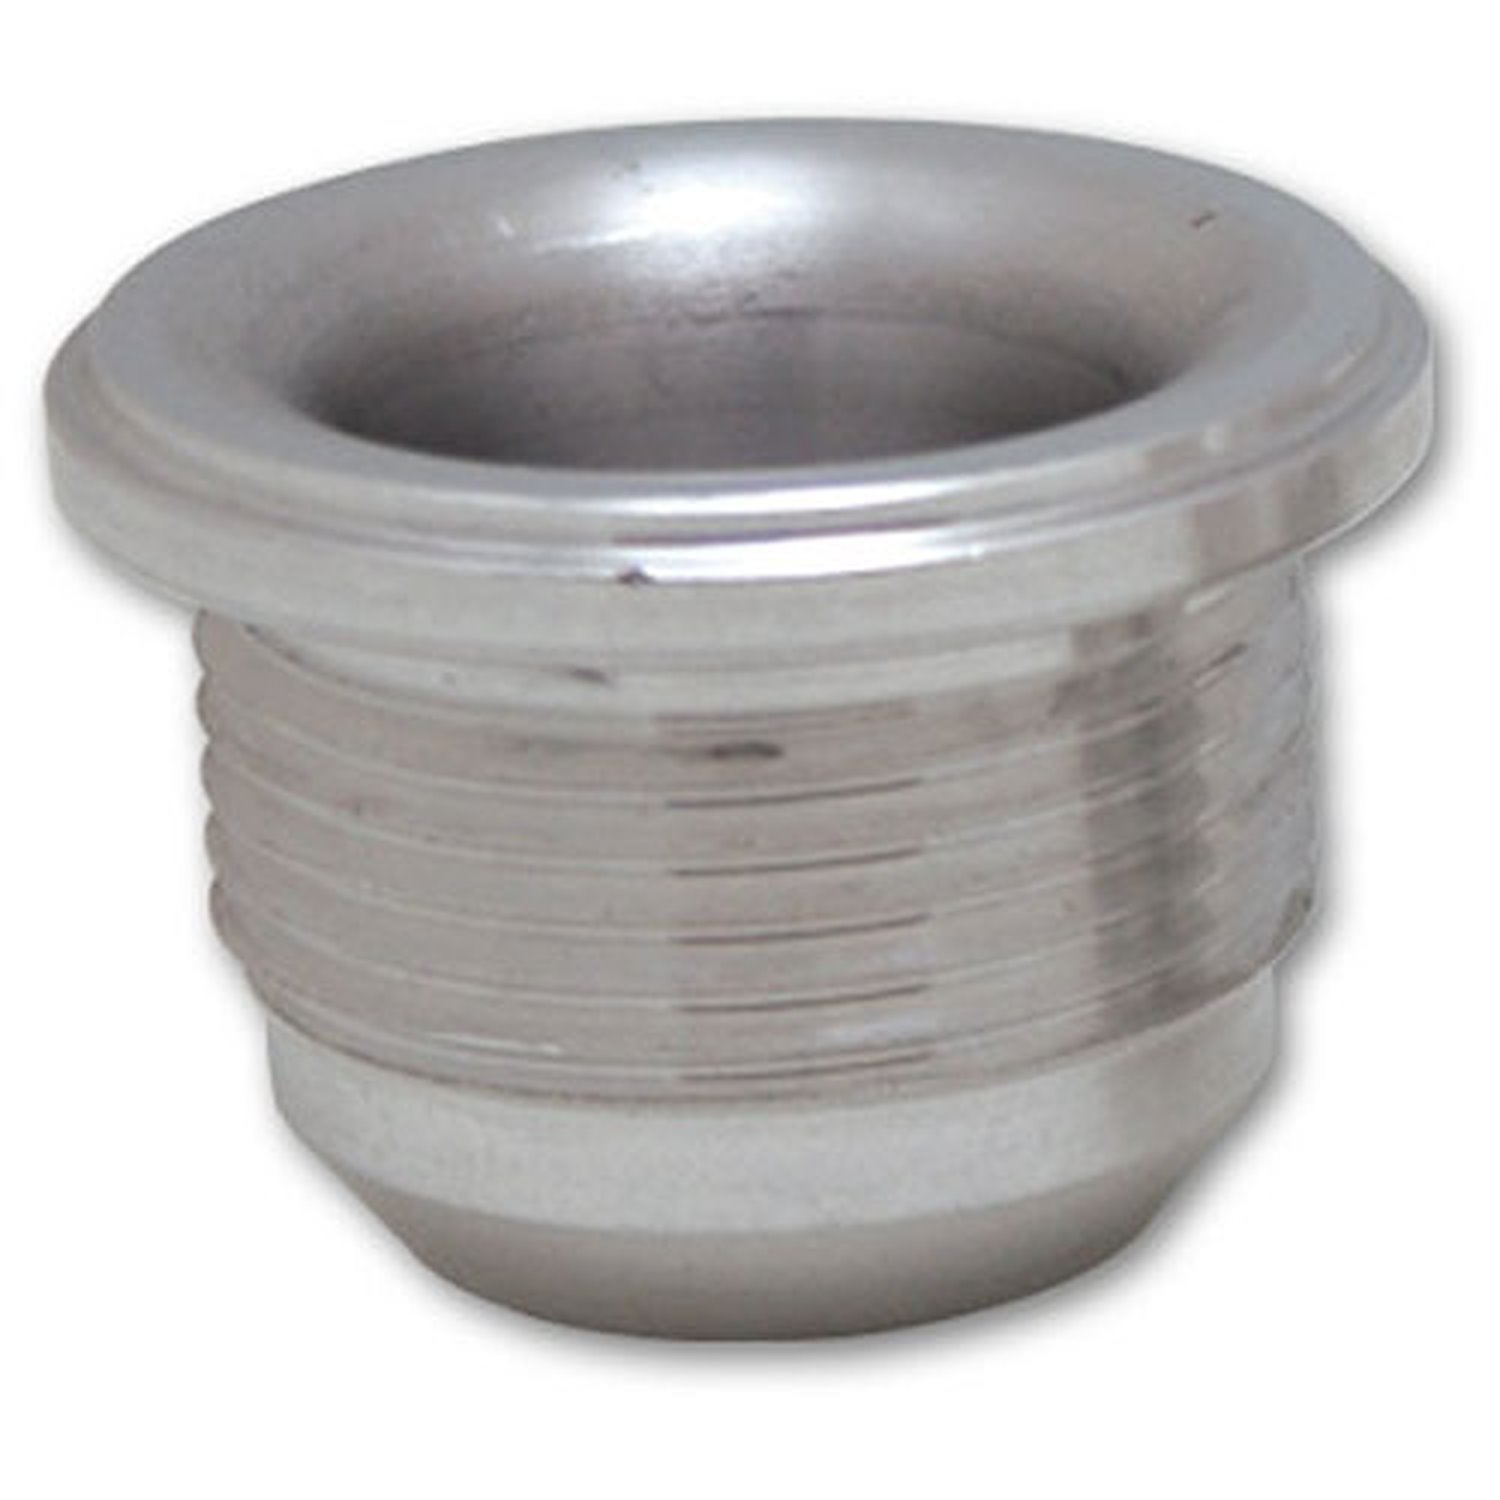 Male -8AN Aluminum Weld Bung 3/4" - 16 SAE Thread